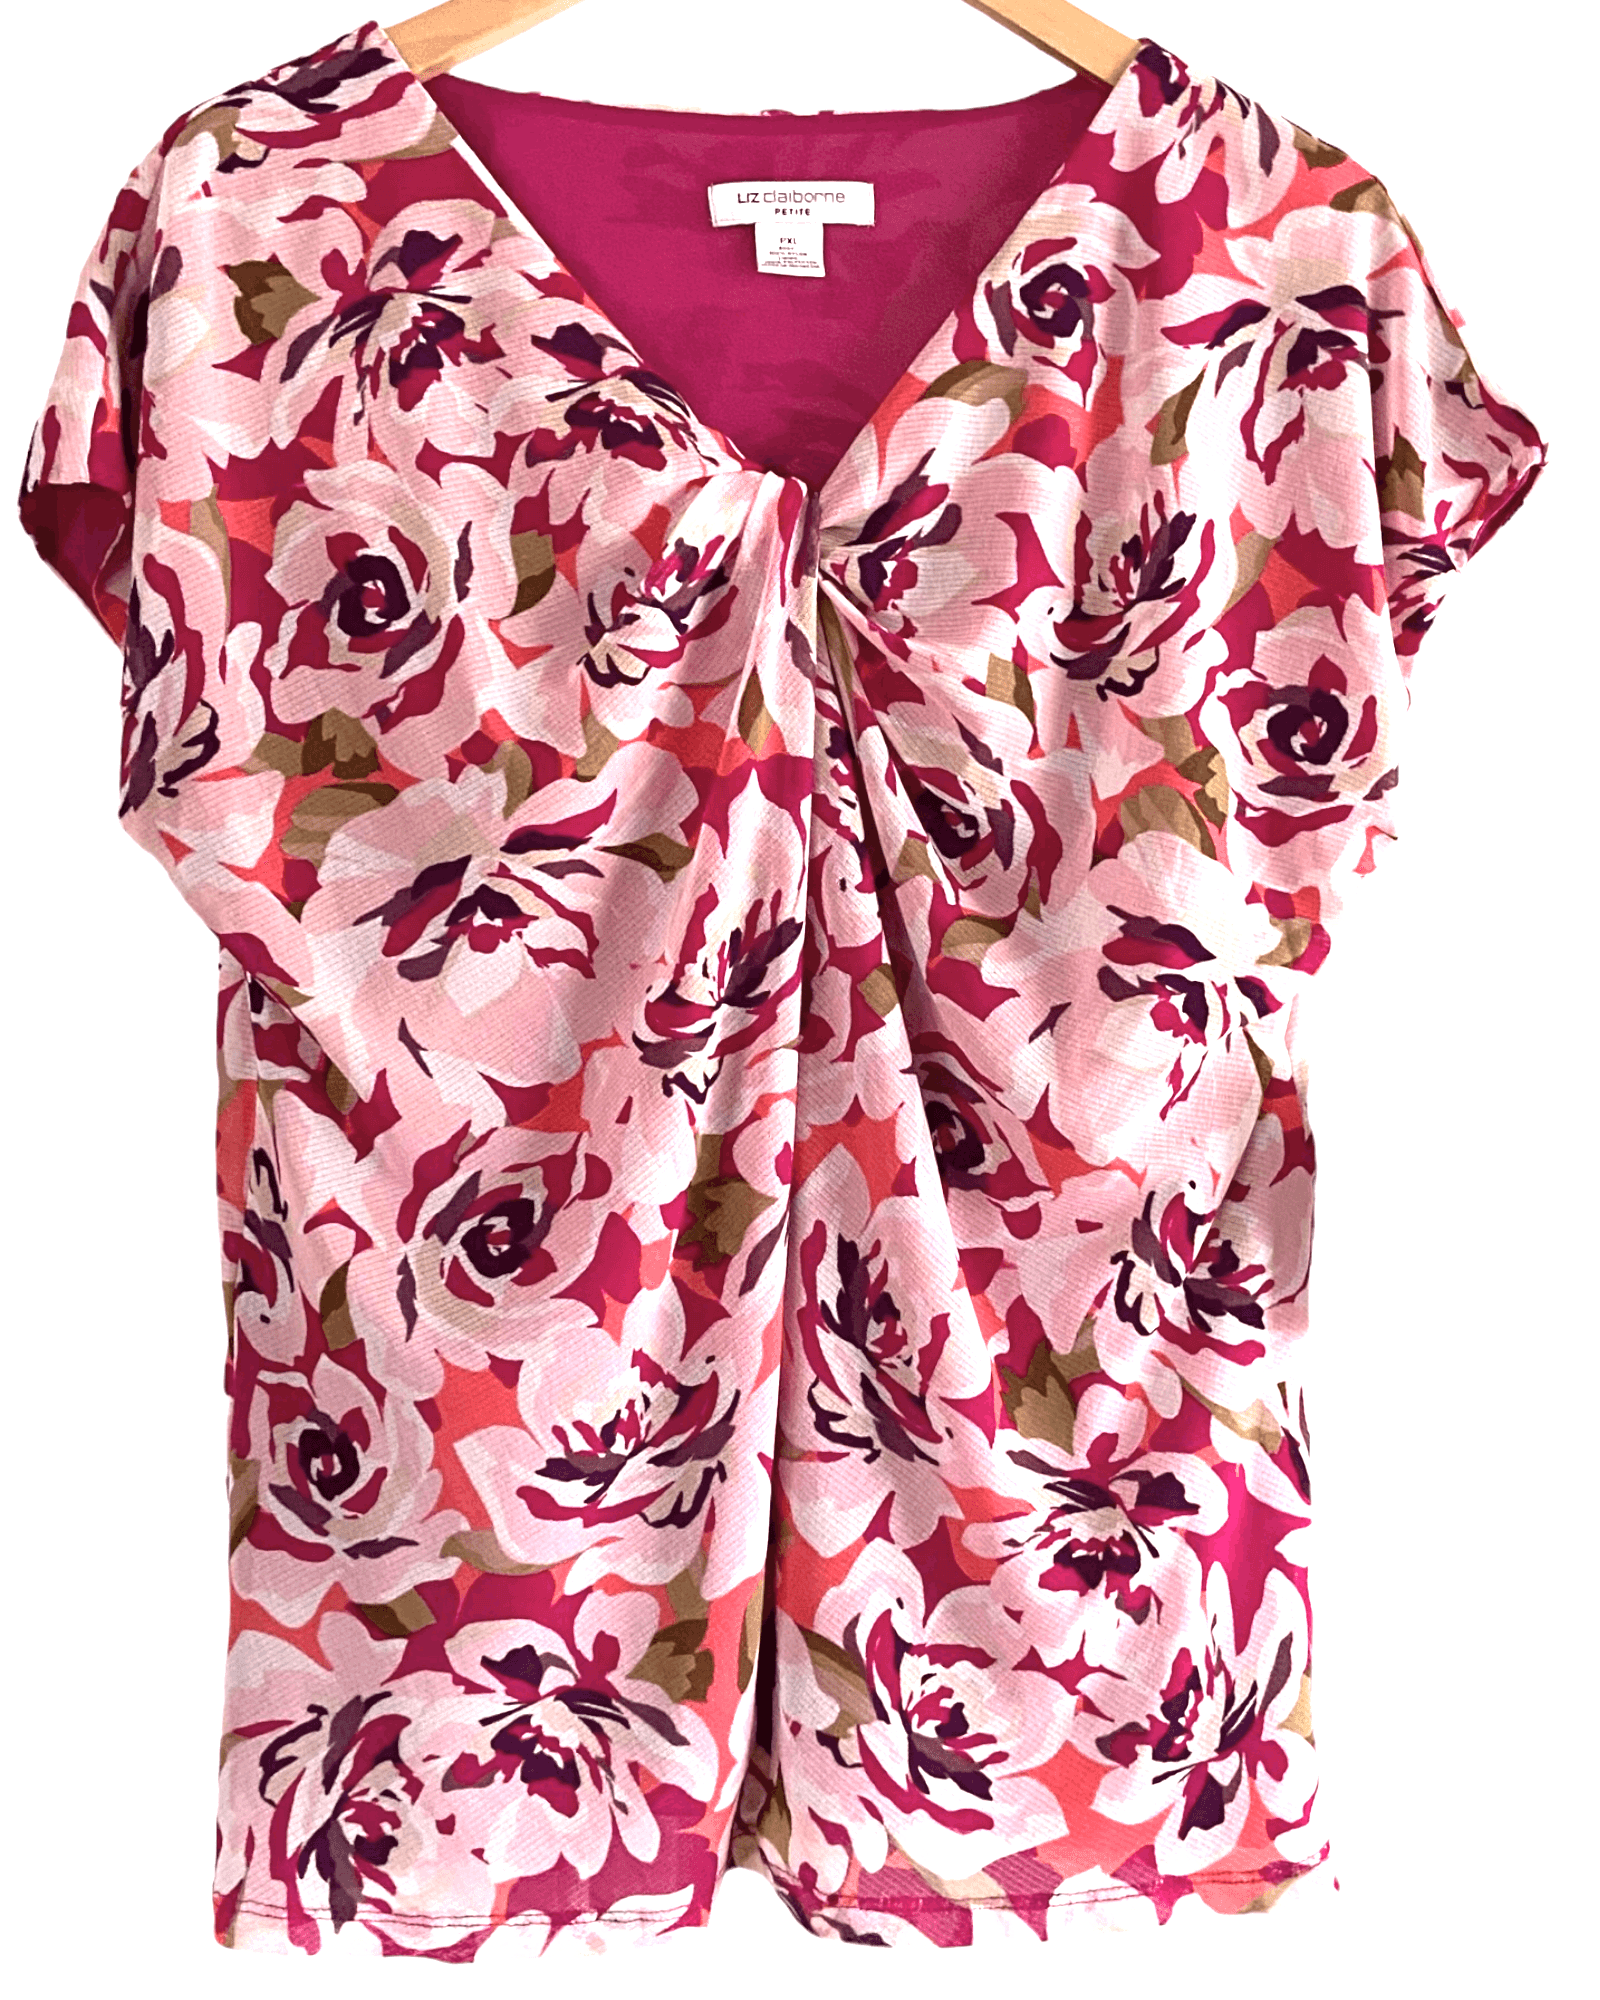 Dark Winter LIZ CLAYBORNE floral print twist front blouse top